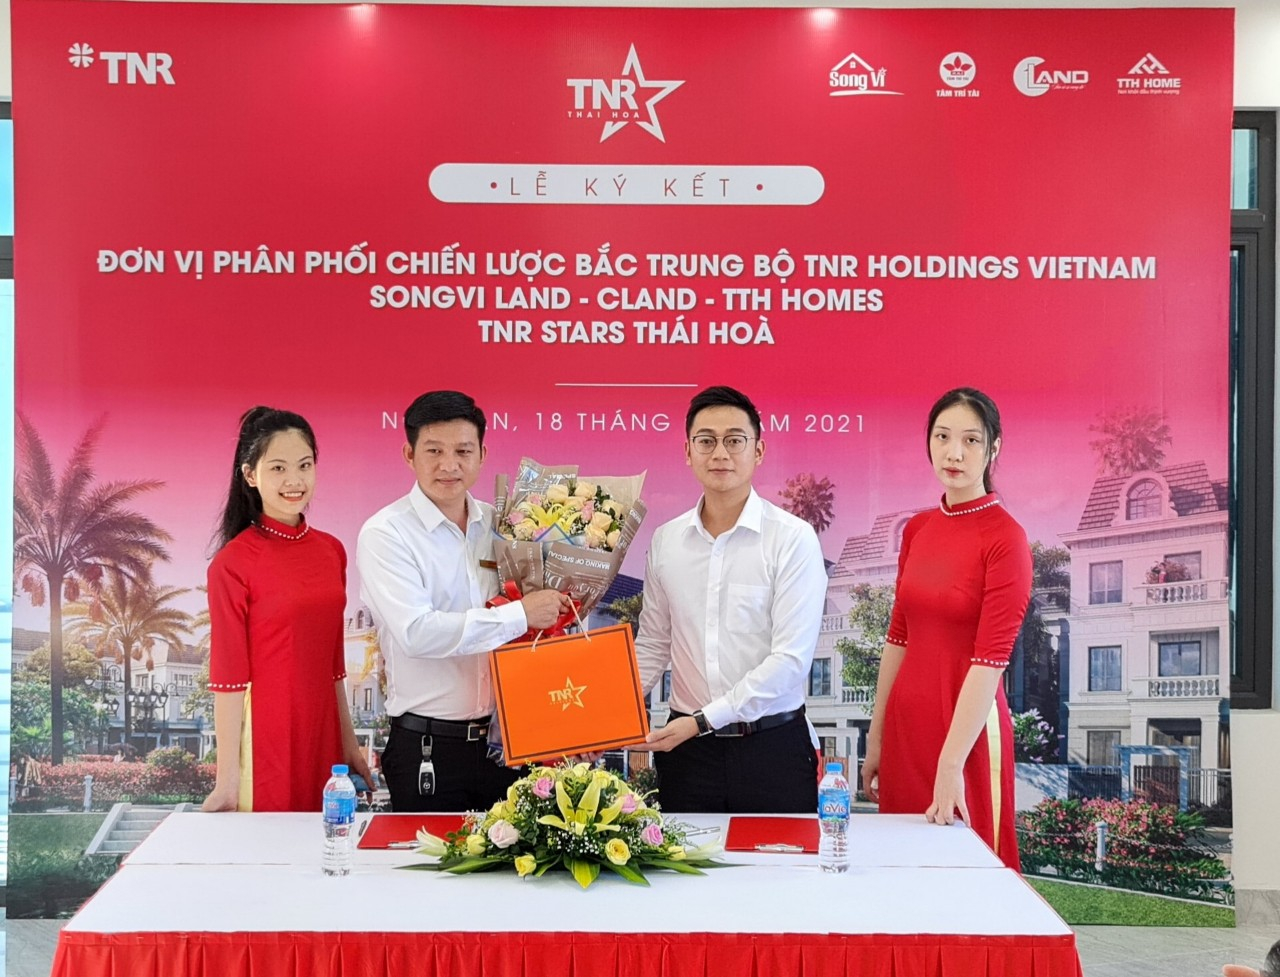 Để dự án tìm được các chủ nhân xứng tầm, TNR Holdings Vietnam đã lựa chọn và quyết định hợp tác với các đơn vị phân phối chiến lược gồm SongVi Land, CLand, TTH Homes